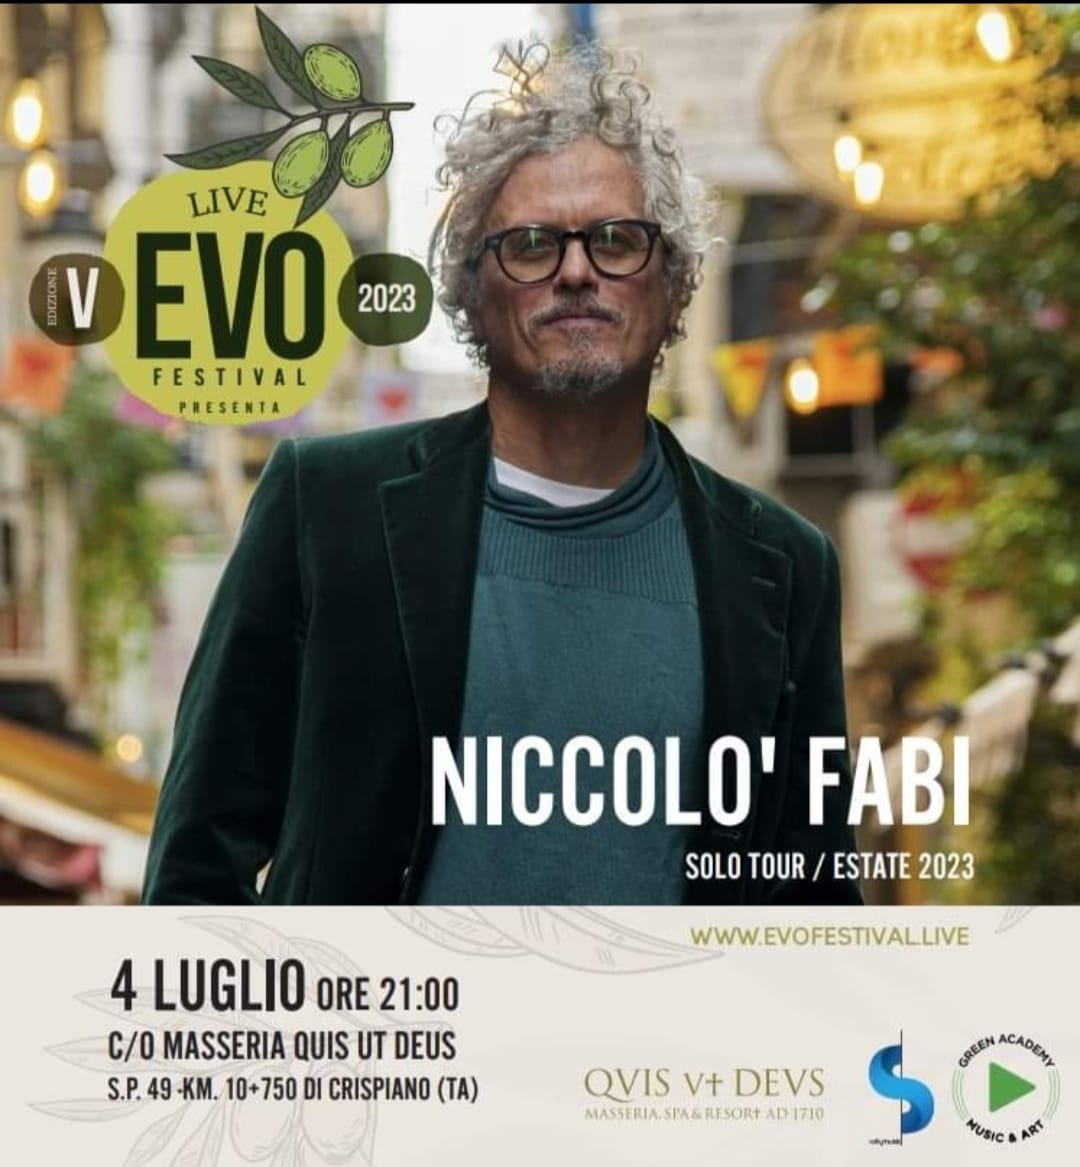 NICCOLO’ FABI PROTAGONISTA DELLA PRIMA SERATA DEL LIVE EVO FESTIVAL